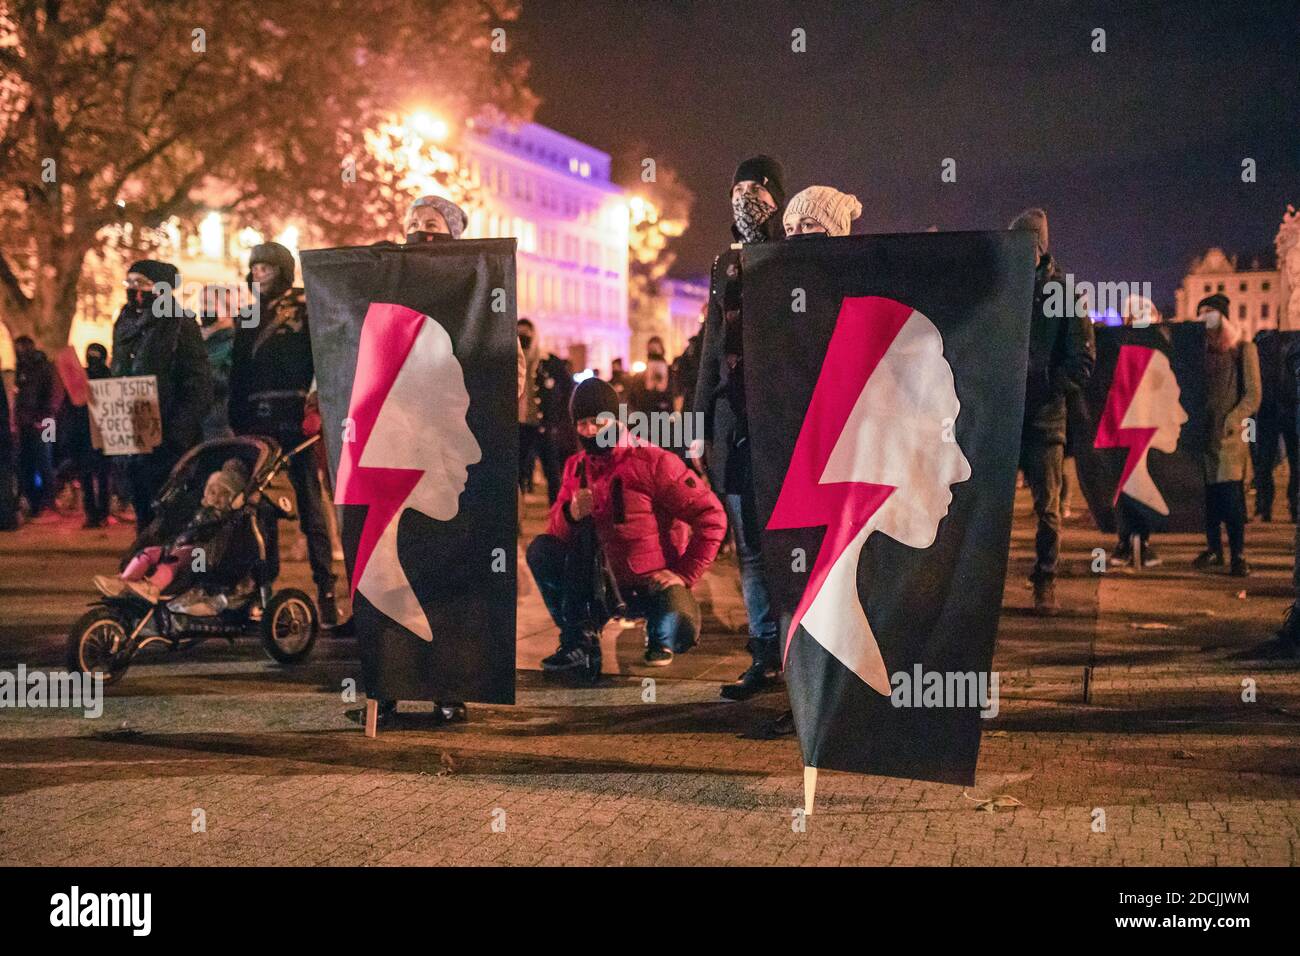 Poznan / Polonia - 21.11.2020: Manifestazione contro il divieto totale di aborto, le donne protestano contro le restrizioni ai diritti delle donne. Foto Stock